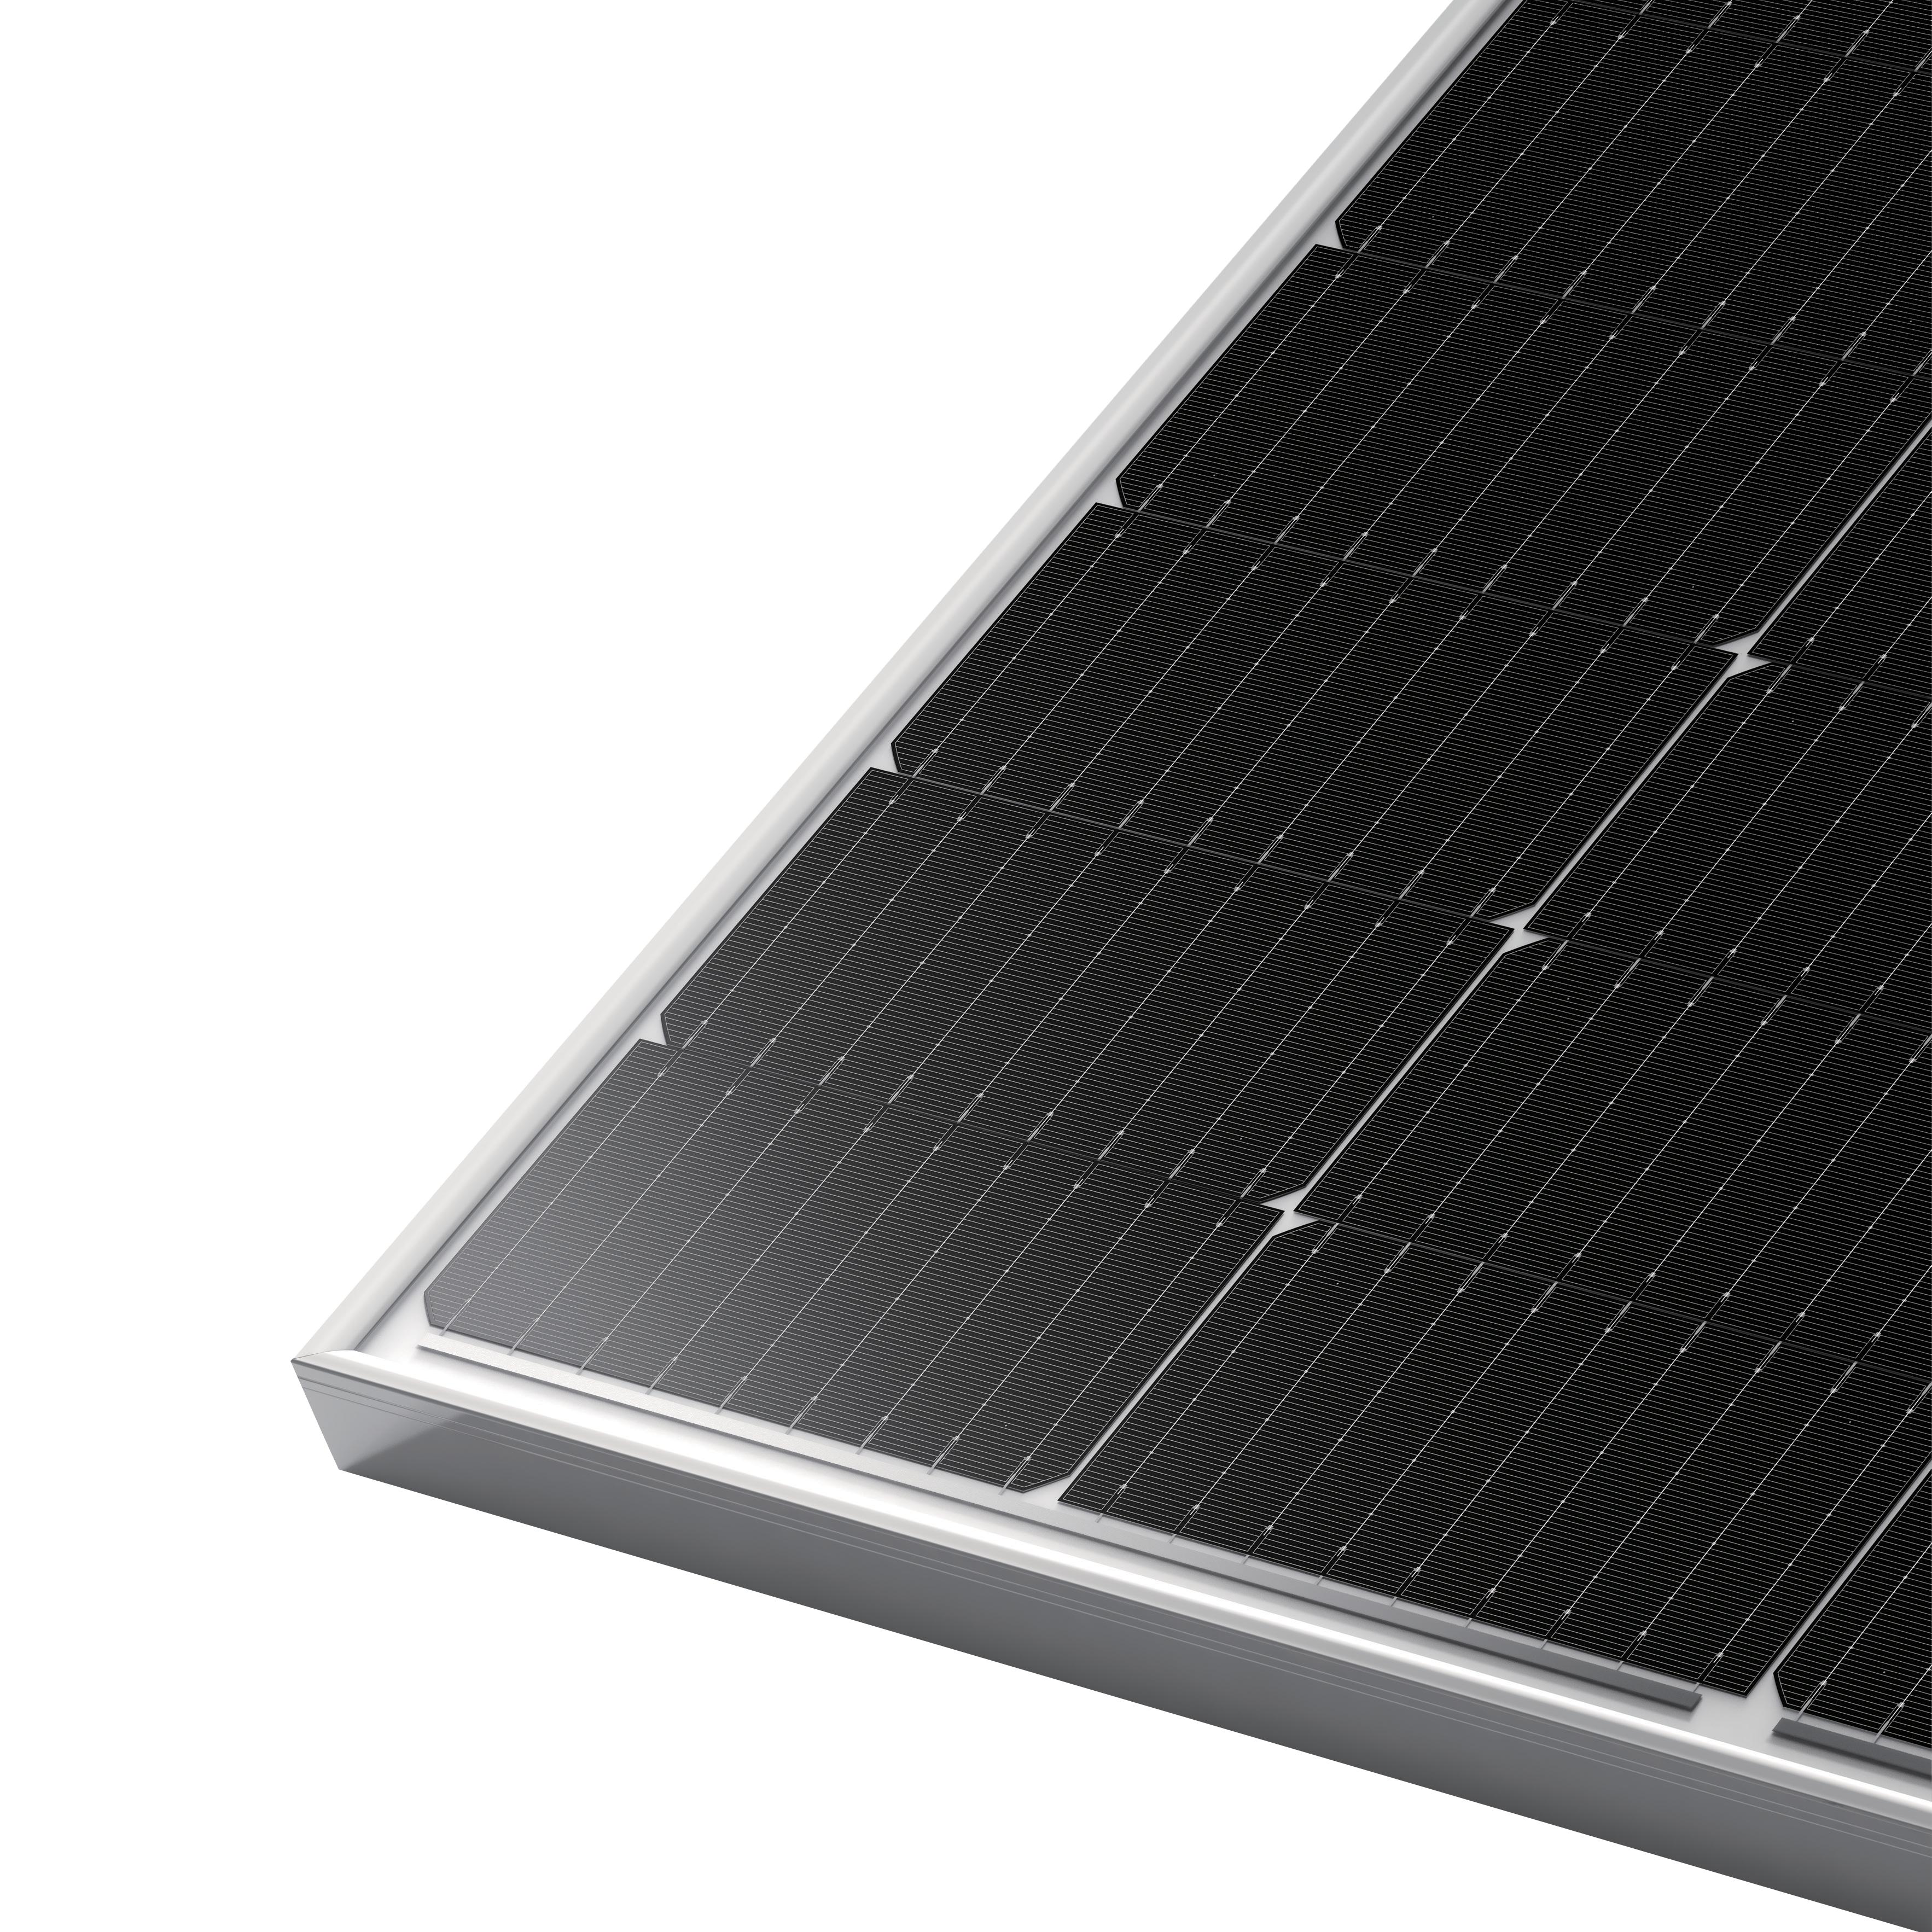 Solar Panel Mono T1 LONGi-Solar Panels-LONGi-diyshop.co.za